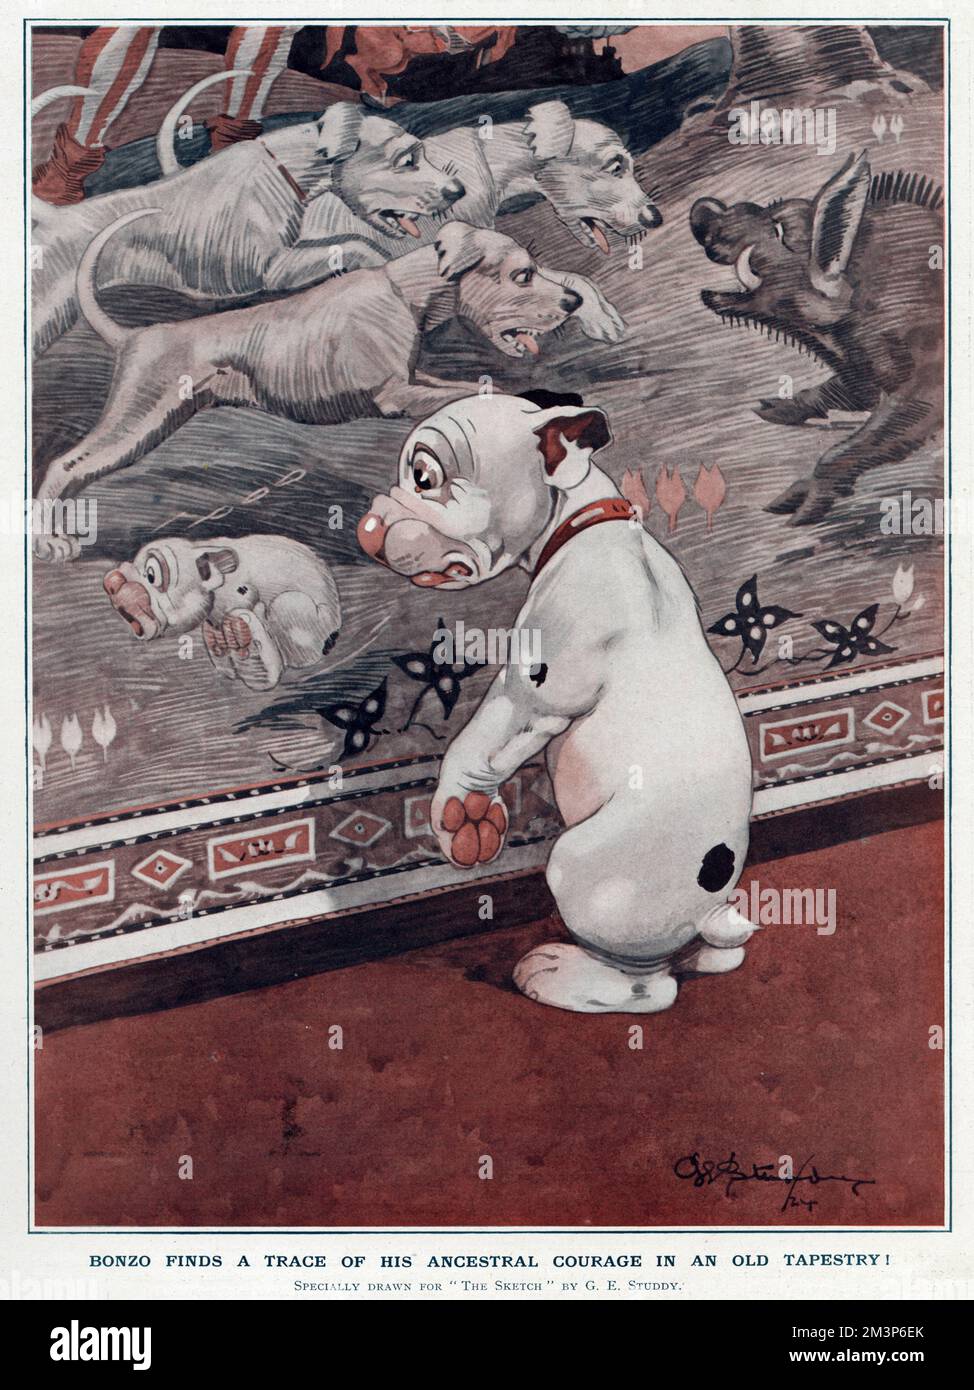 Bonzo findet eine Spur seines uralten Mutes in einem alten Wandteppich -- er bemerkt, dass sein Vorfahre vor einem Wildschwein wegläuft, während größere und mutigere Hunde ihm gegenübertreten. Datum: 1924 Stockfoto